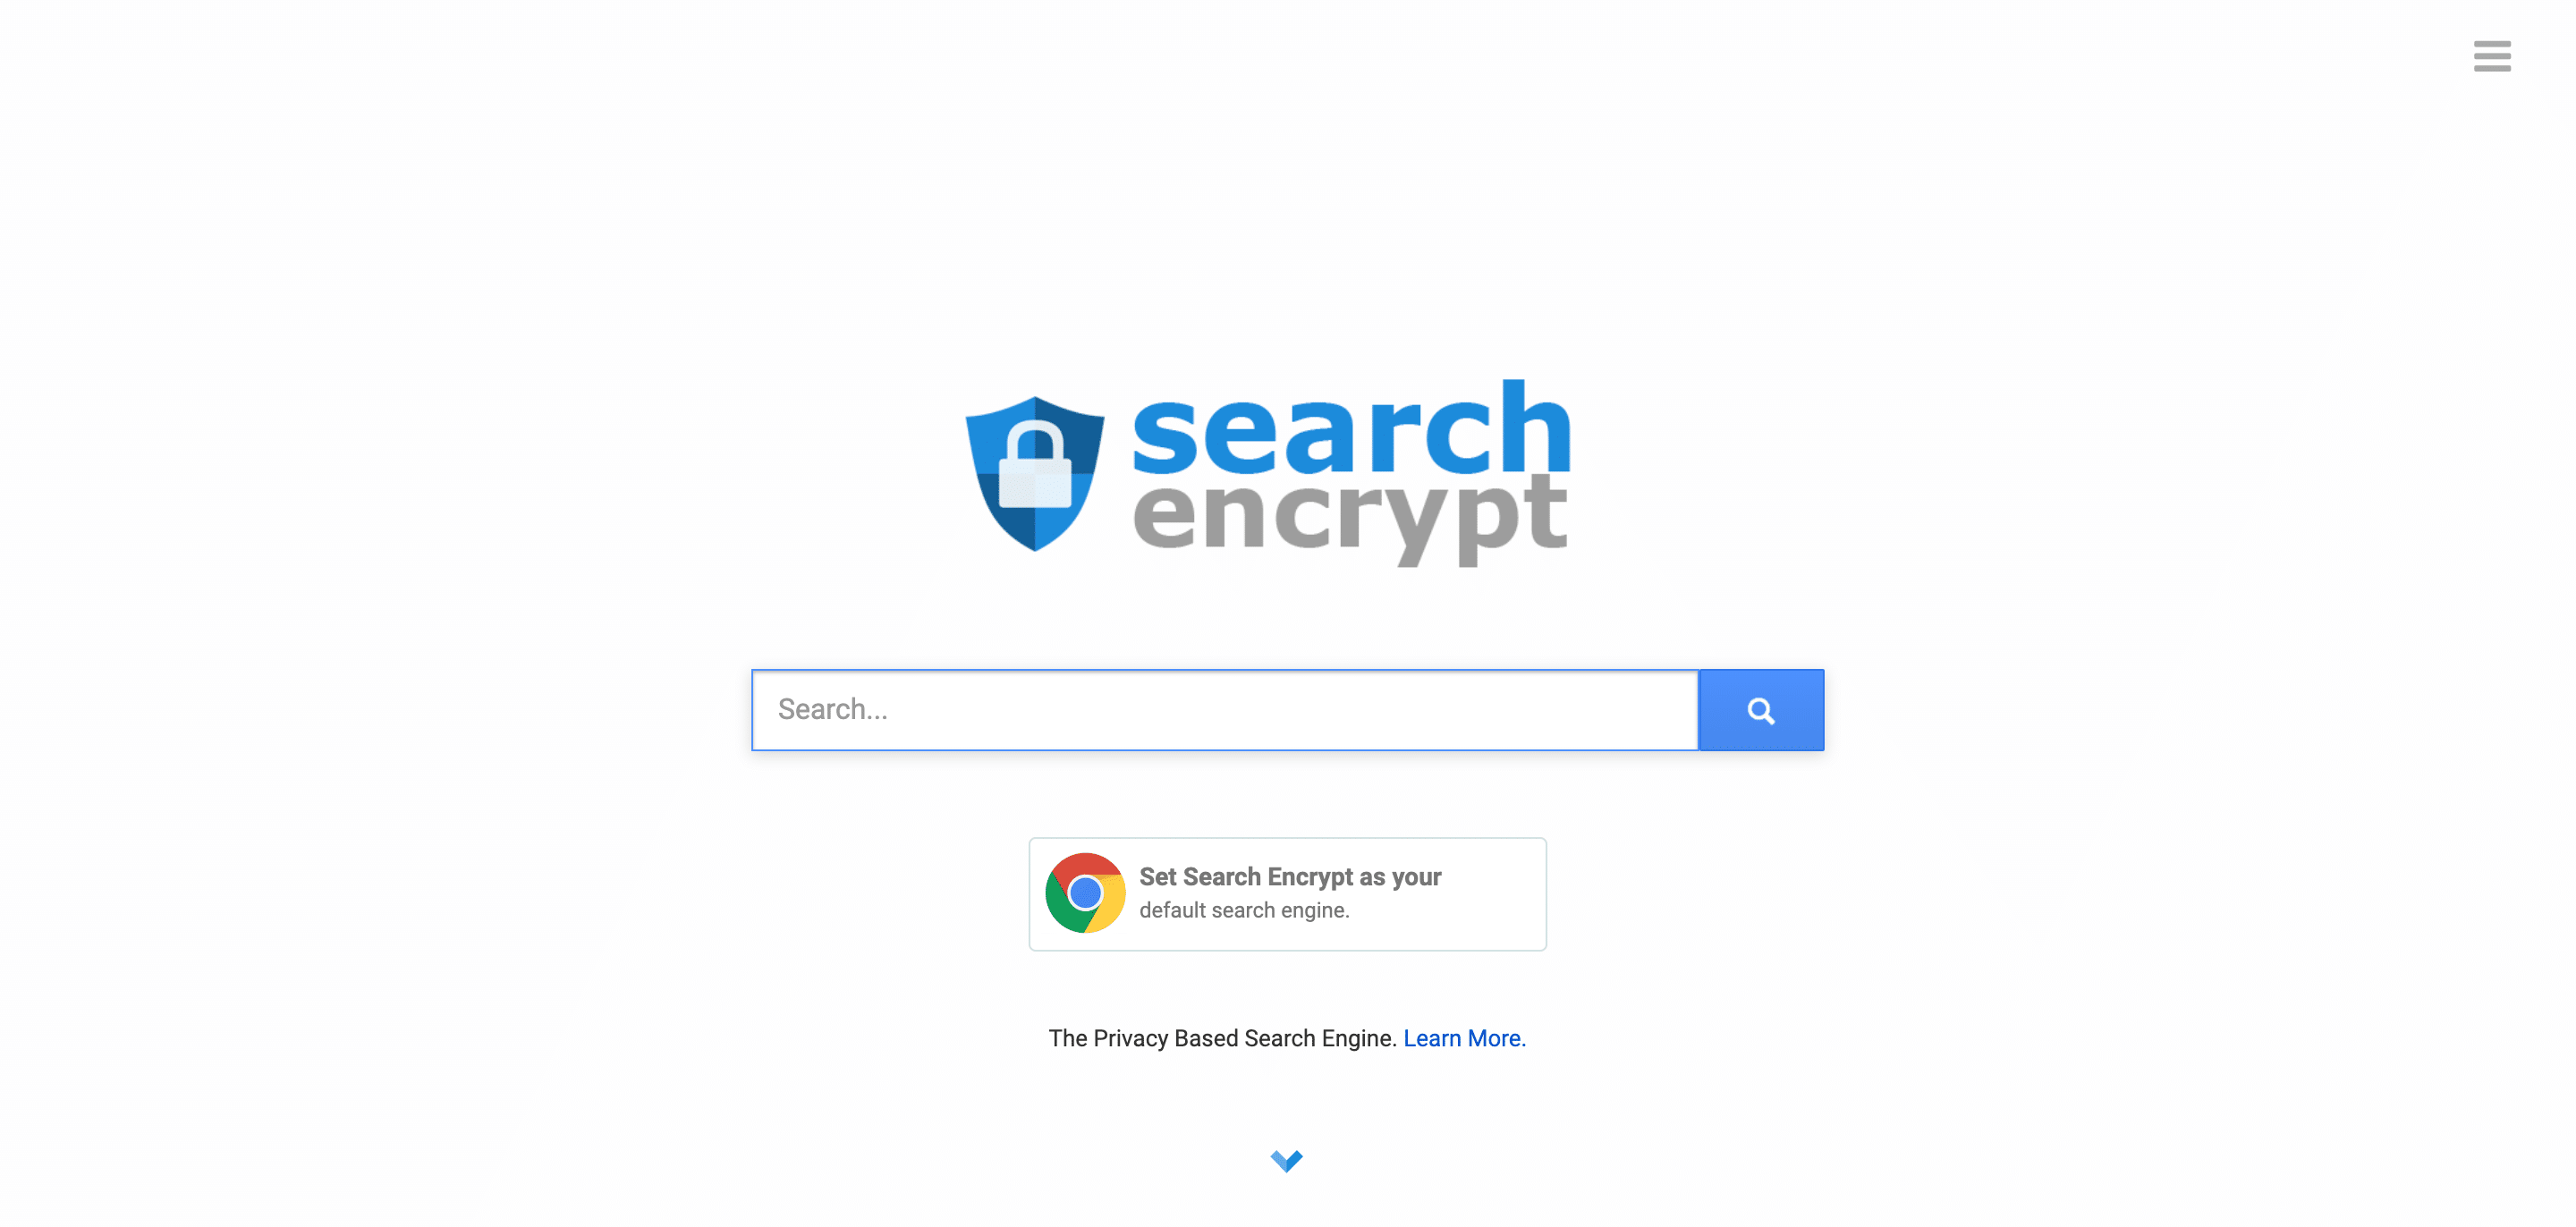 検索エンジンSearch encrypt 